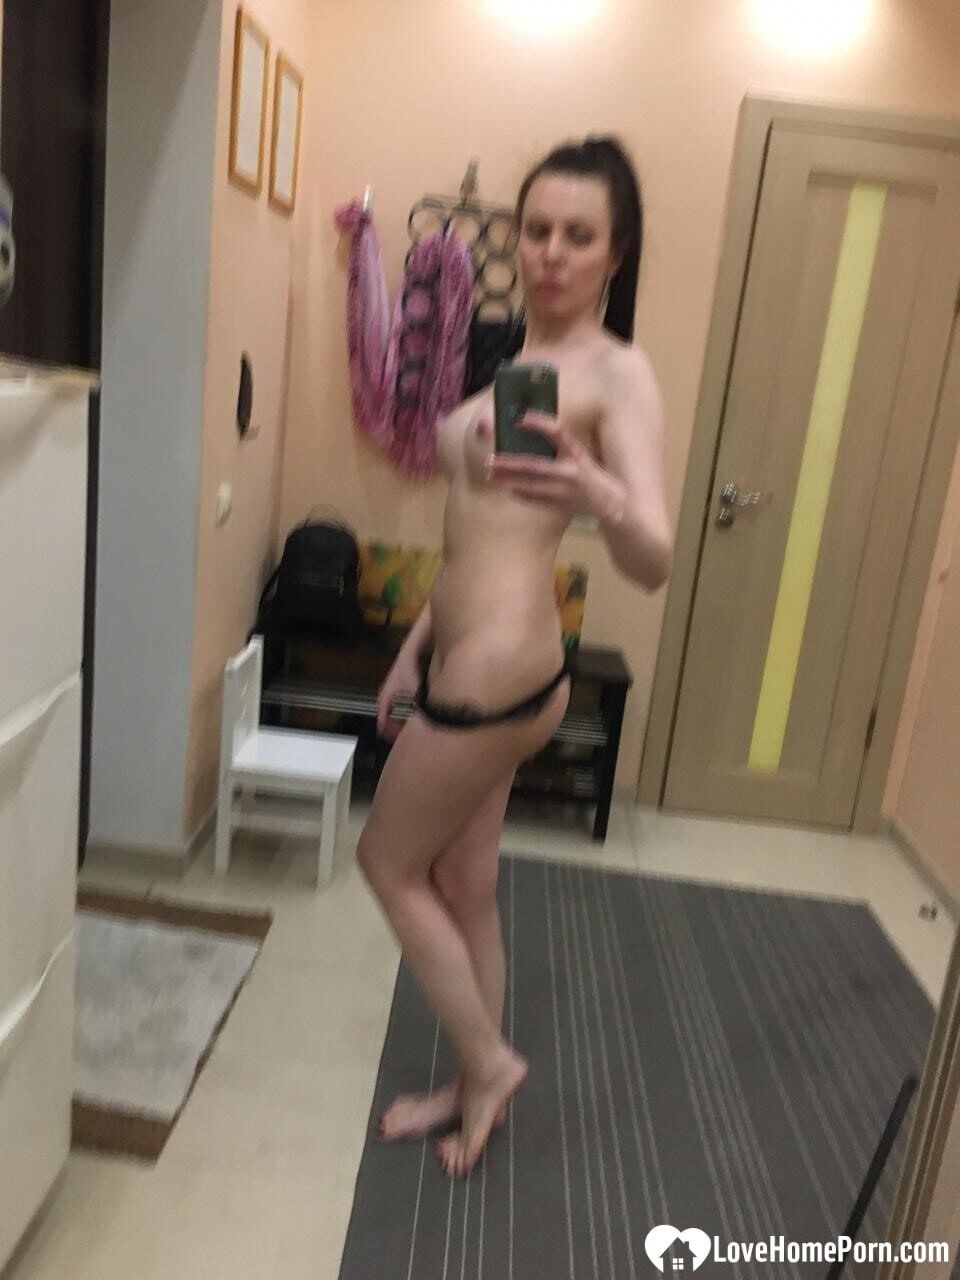 Sexy mirror selfies in my favorite lingerie #10